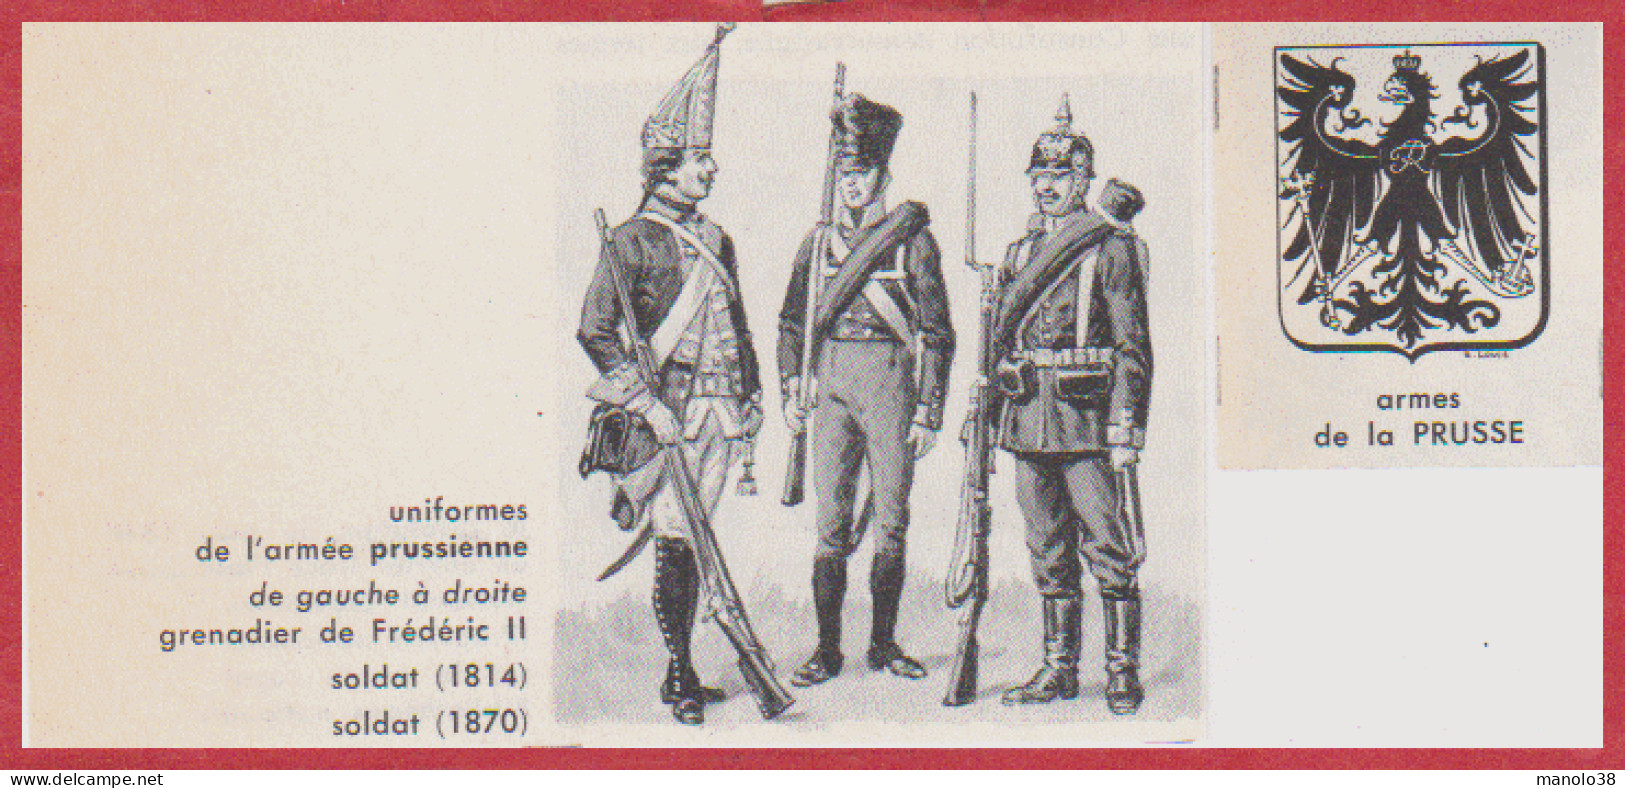 Uniformes De L'armée Prussienne. Grenadier De Frederic II, Soldats De 1814, 1870. Armes De La Prusse. Larousse 1960. - Documents Historiques